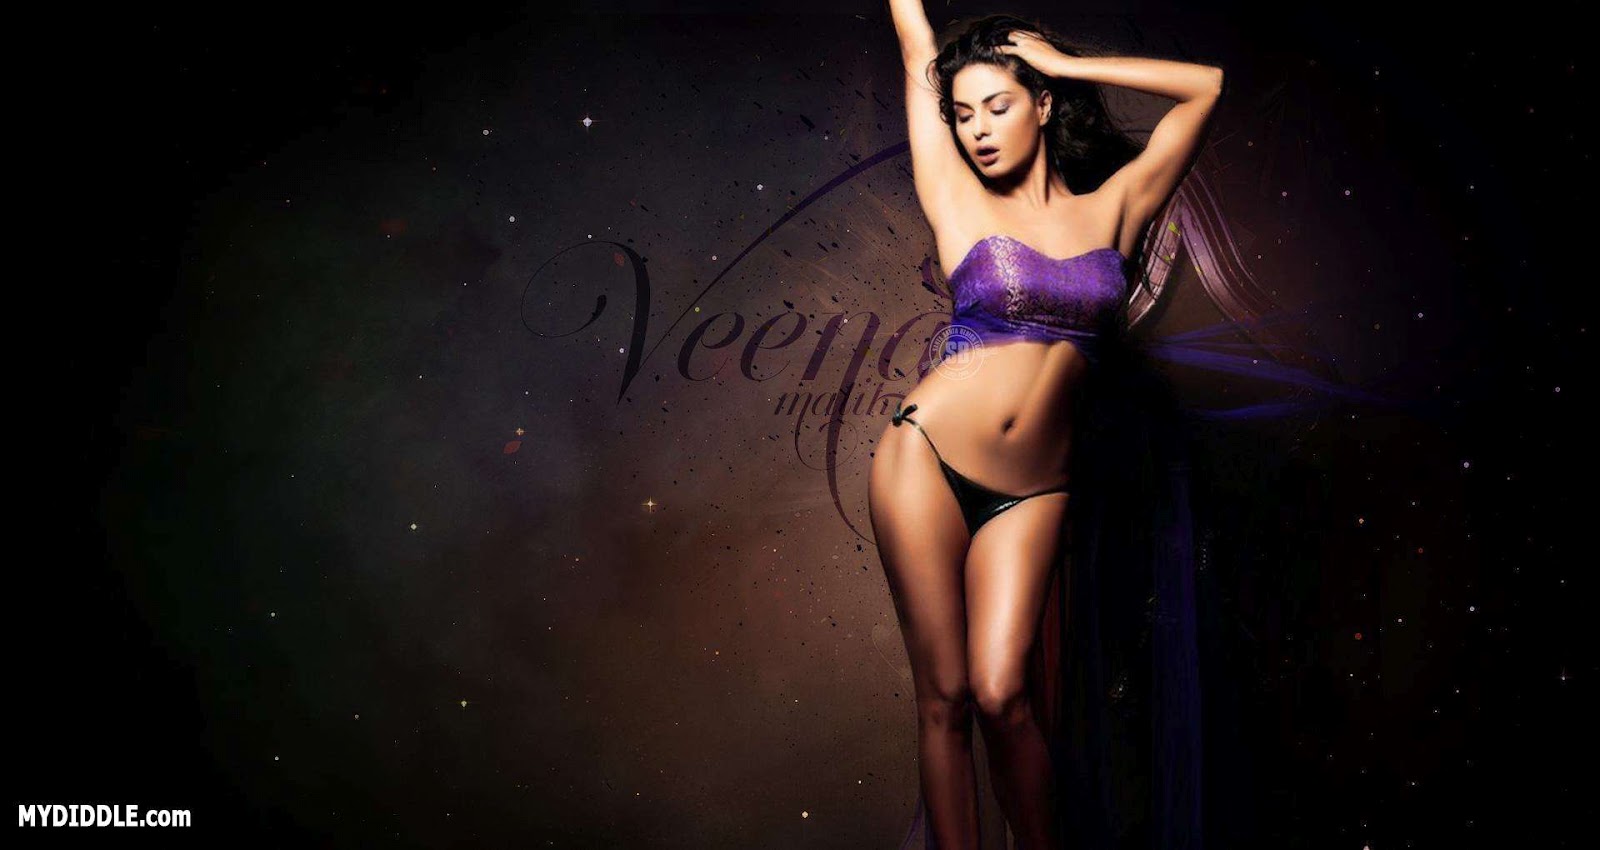 Veena malik purple bikini Hot pic -  Veena Malik Bikini wallpaper